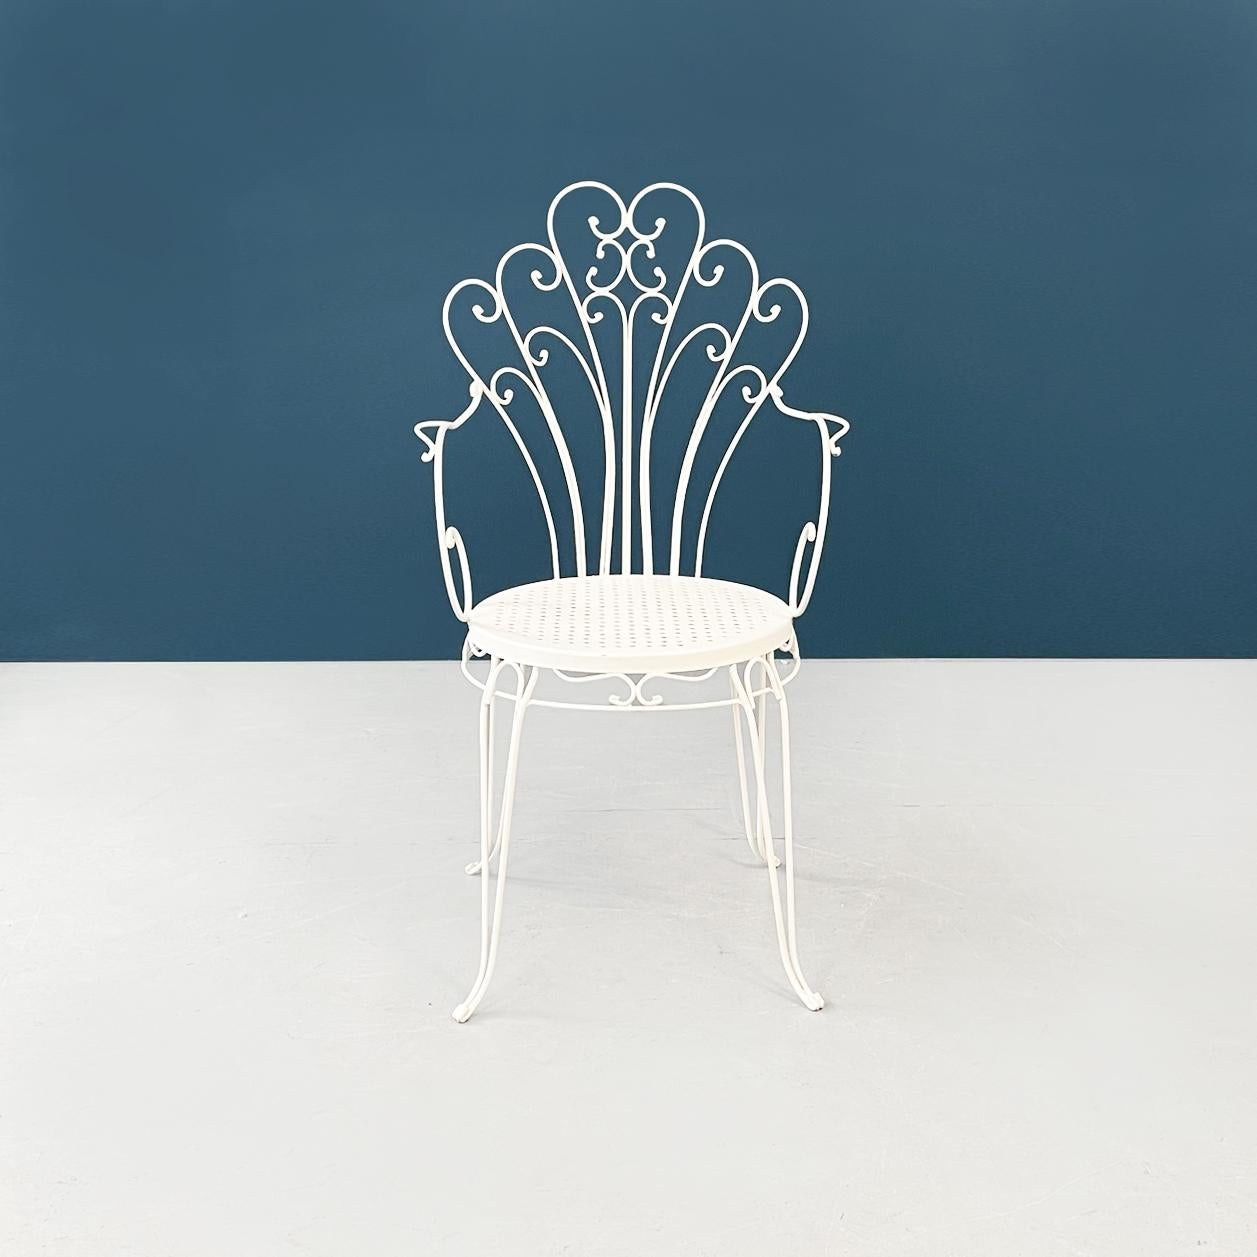 Italienische Gartenstühle aus der Mitte des Jahrhunderts aus weißem Schmiedeeisen mit Locken, 1960er Jahre
Satz von 4 Gartenstühlen aus weiß lackiertem Schmiedeeisen. Der runde Sitz ist gelocht und auf dem Profil mit Locken verziert. Die Rückseite